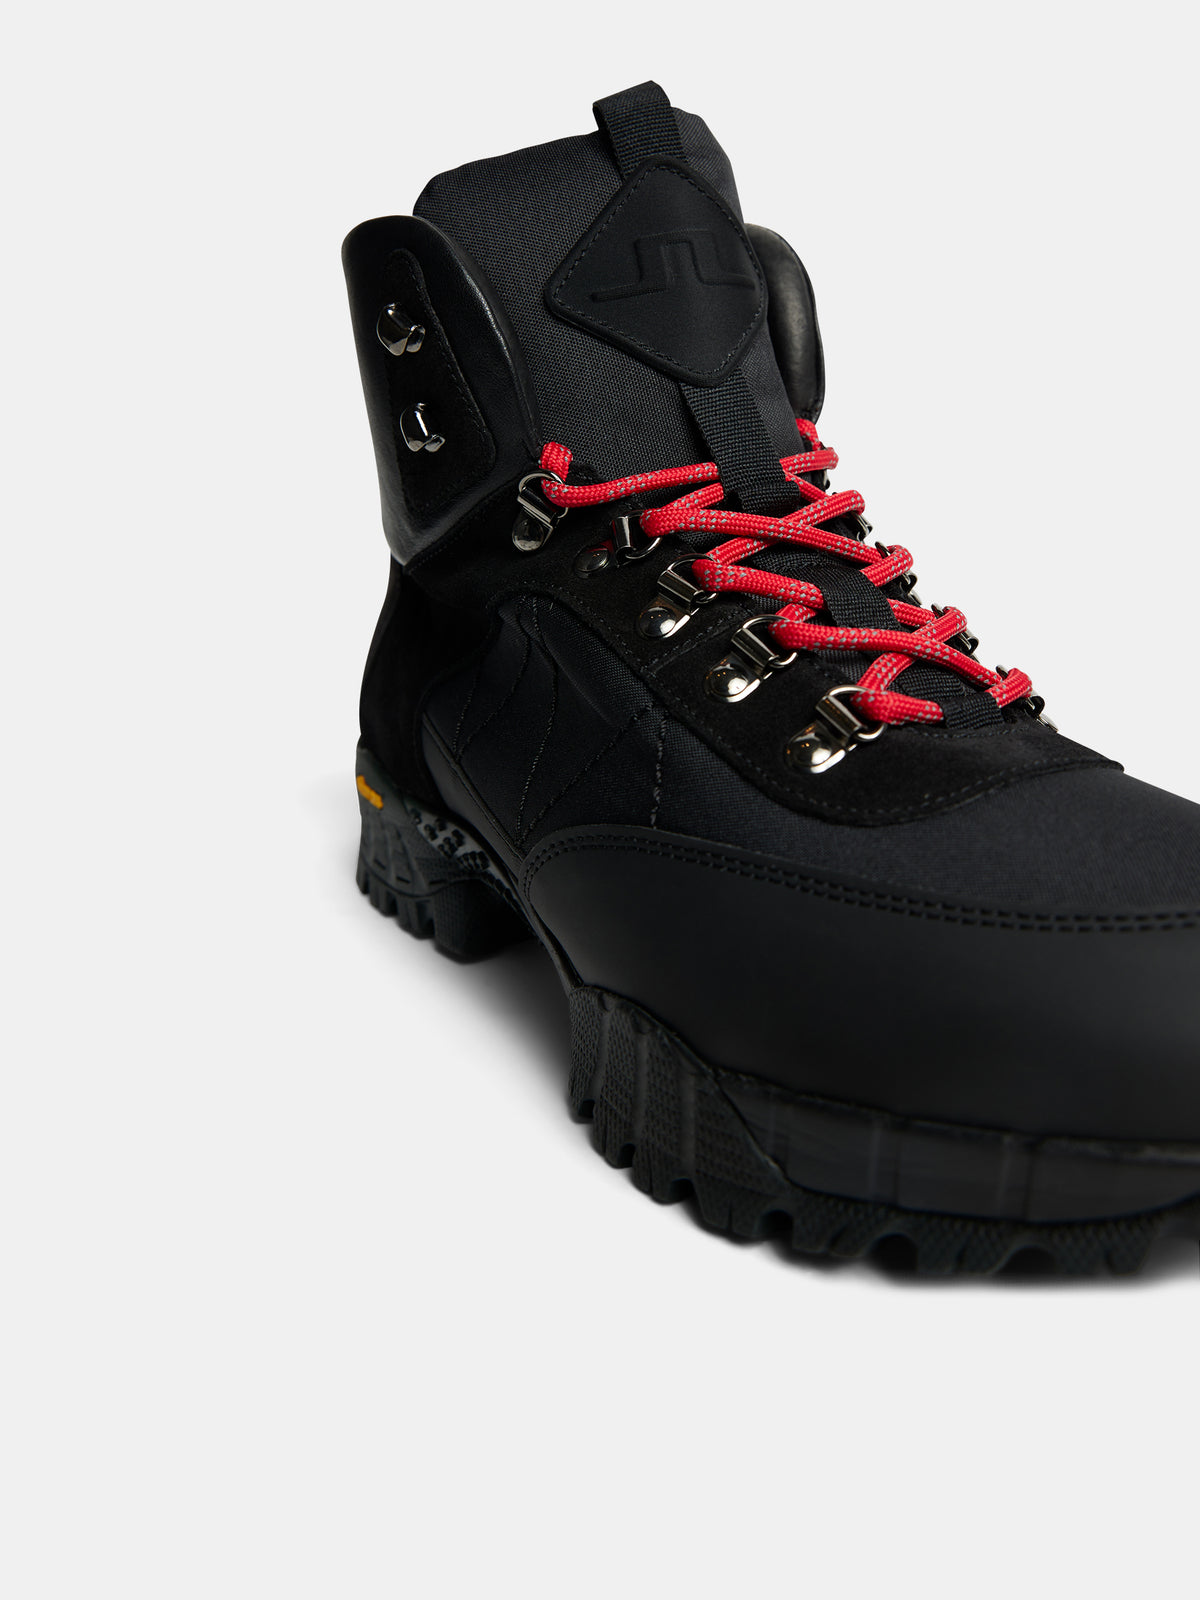 Hyde Hiker HT Boots / Black